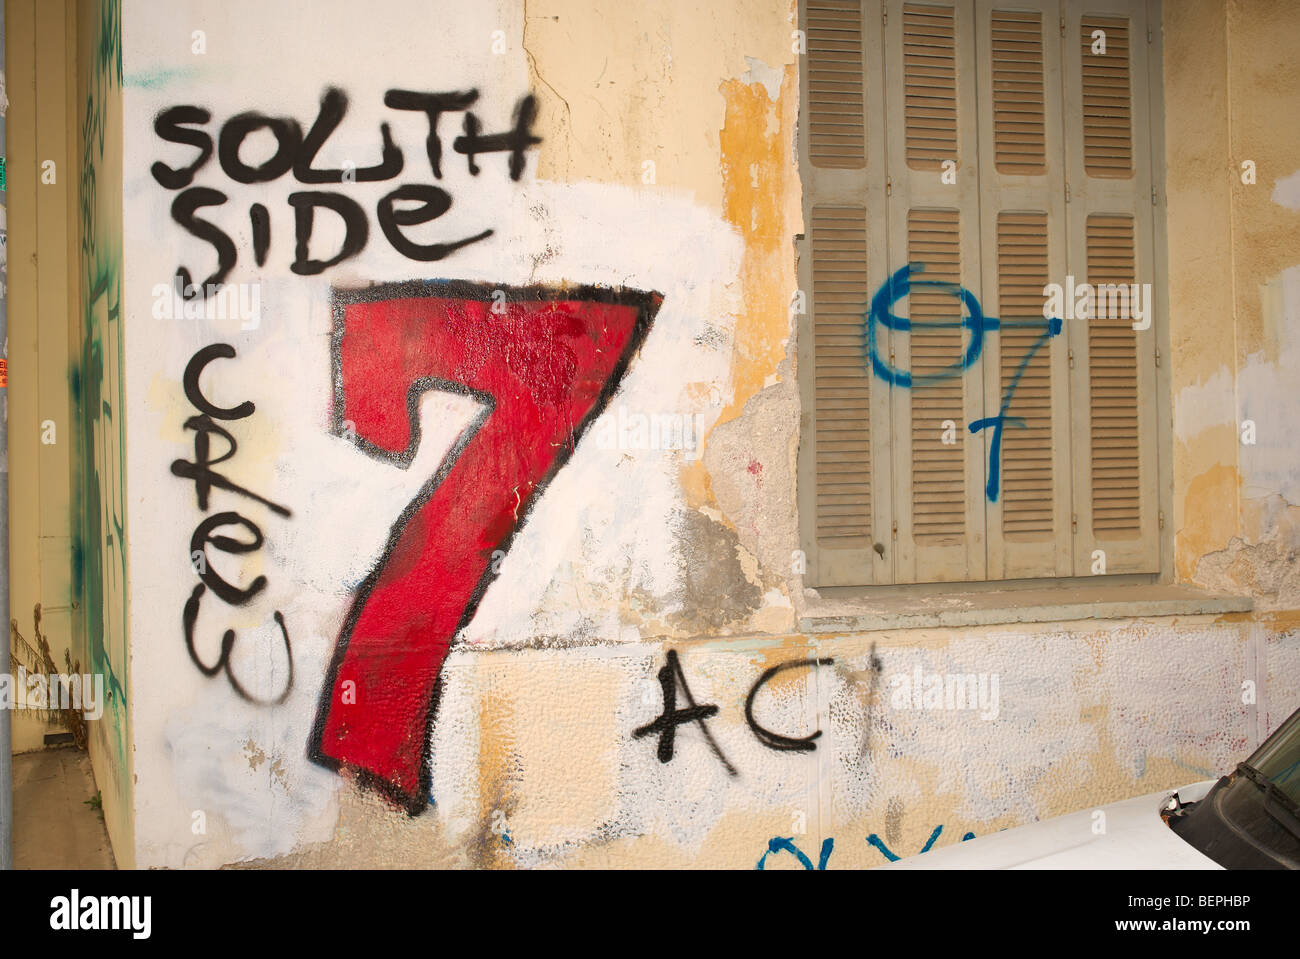 Graffiti "Südseite Crew" und großen roten 7 auf Altbau Rethymnon Kreta Griechenland Stockfoto